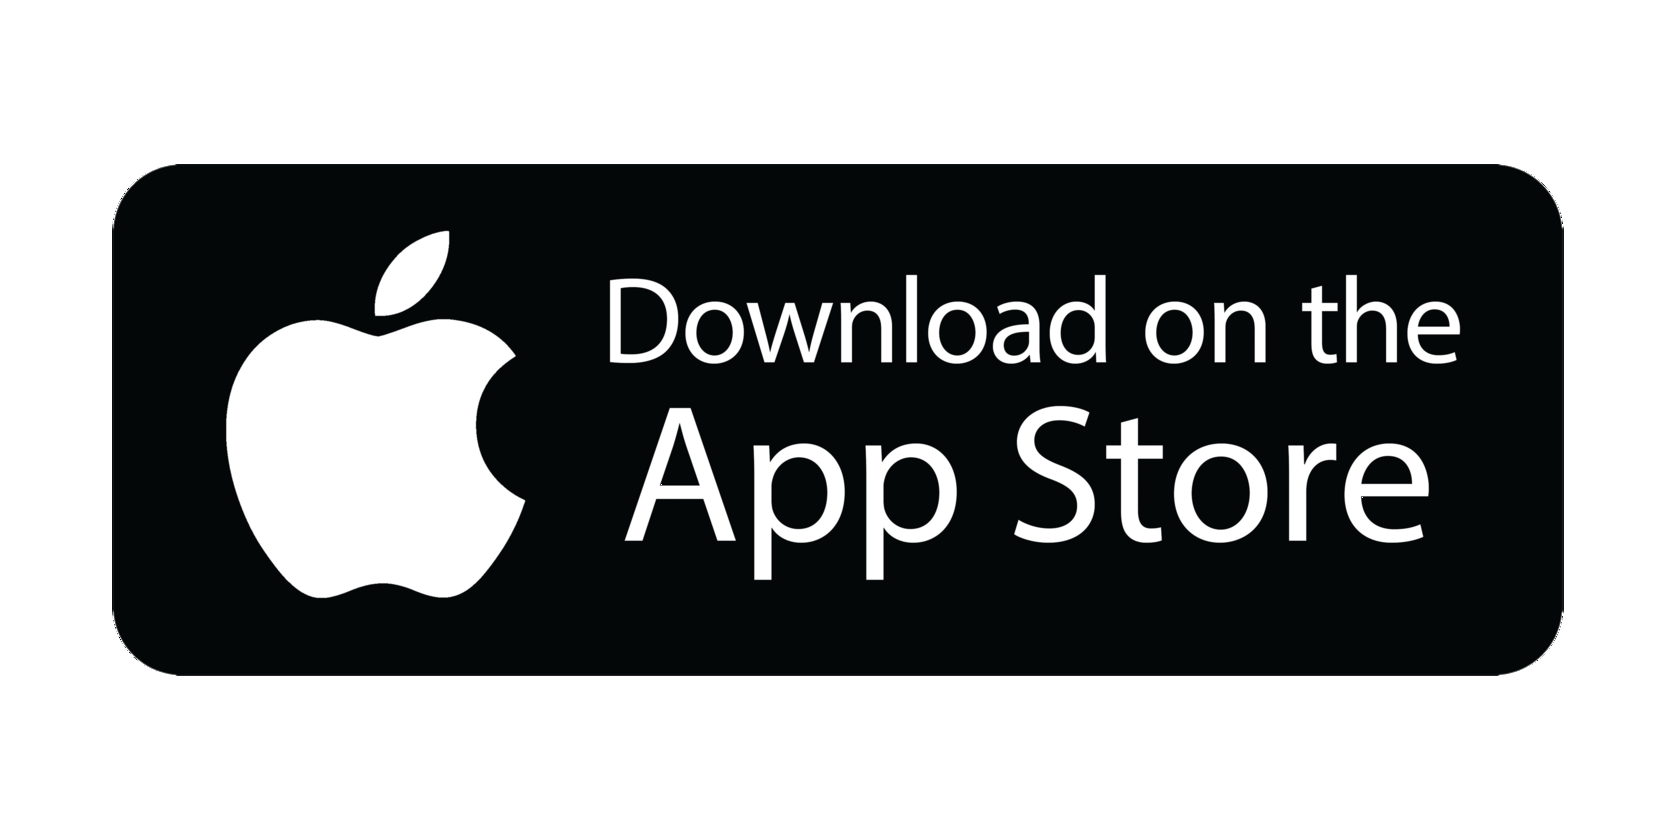 Ин стор. Кнопка апстор. Apple Store Google Play. Иконка app Store. Доступно в app Store.